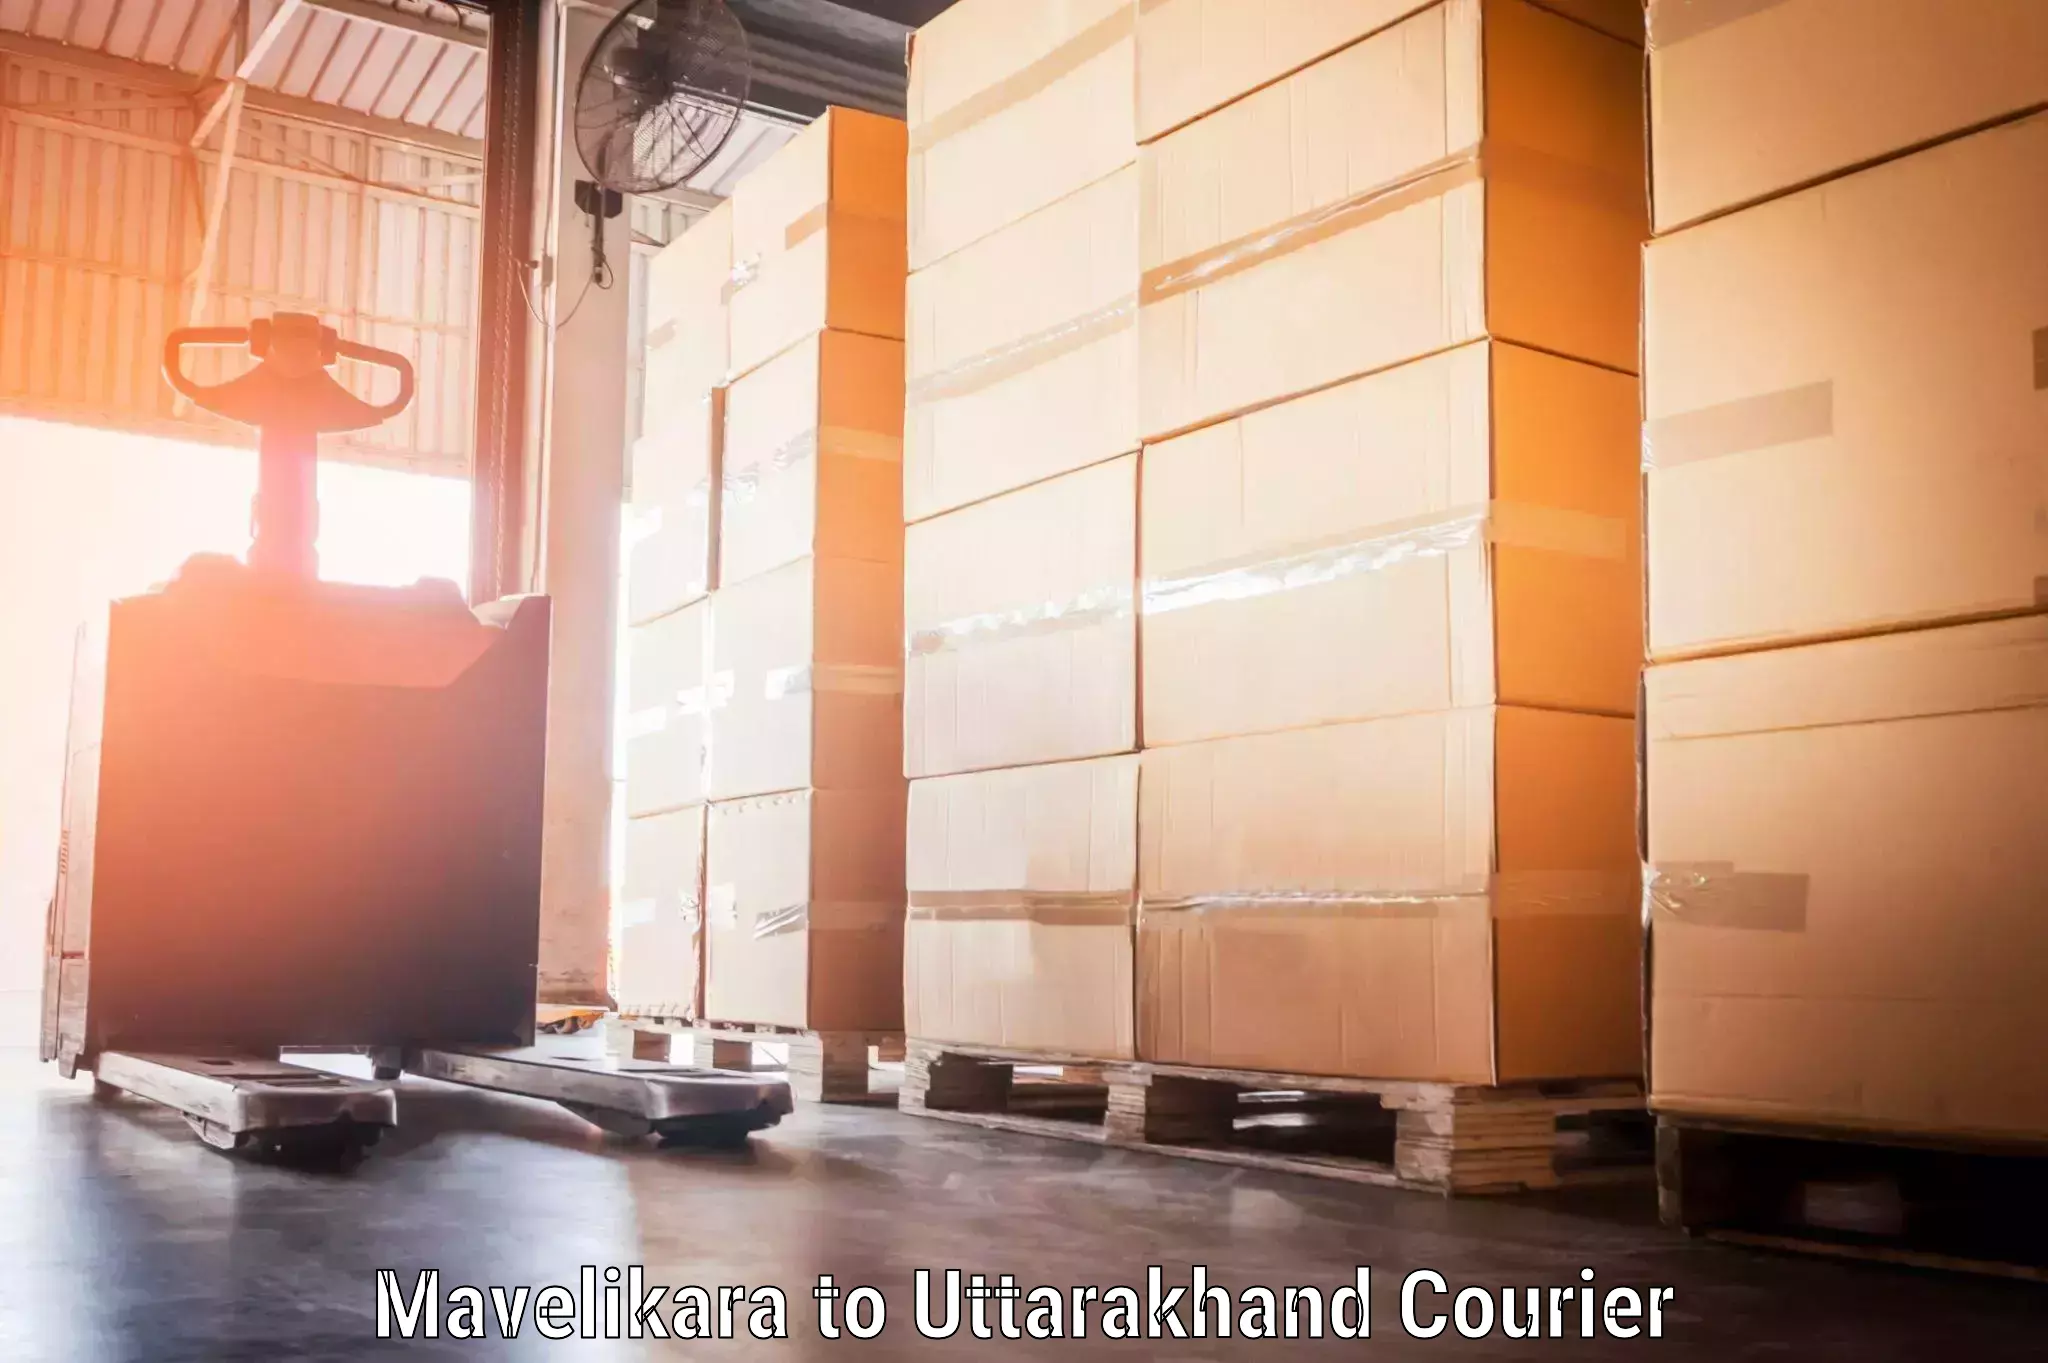 Luggage shipment processing Mavelikara to Uttarakhand